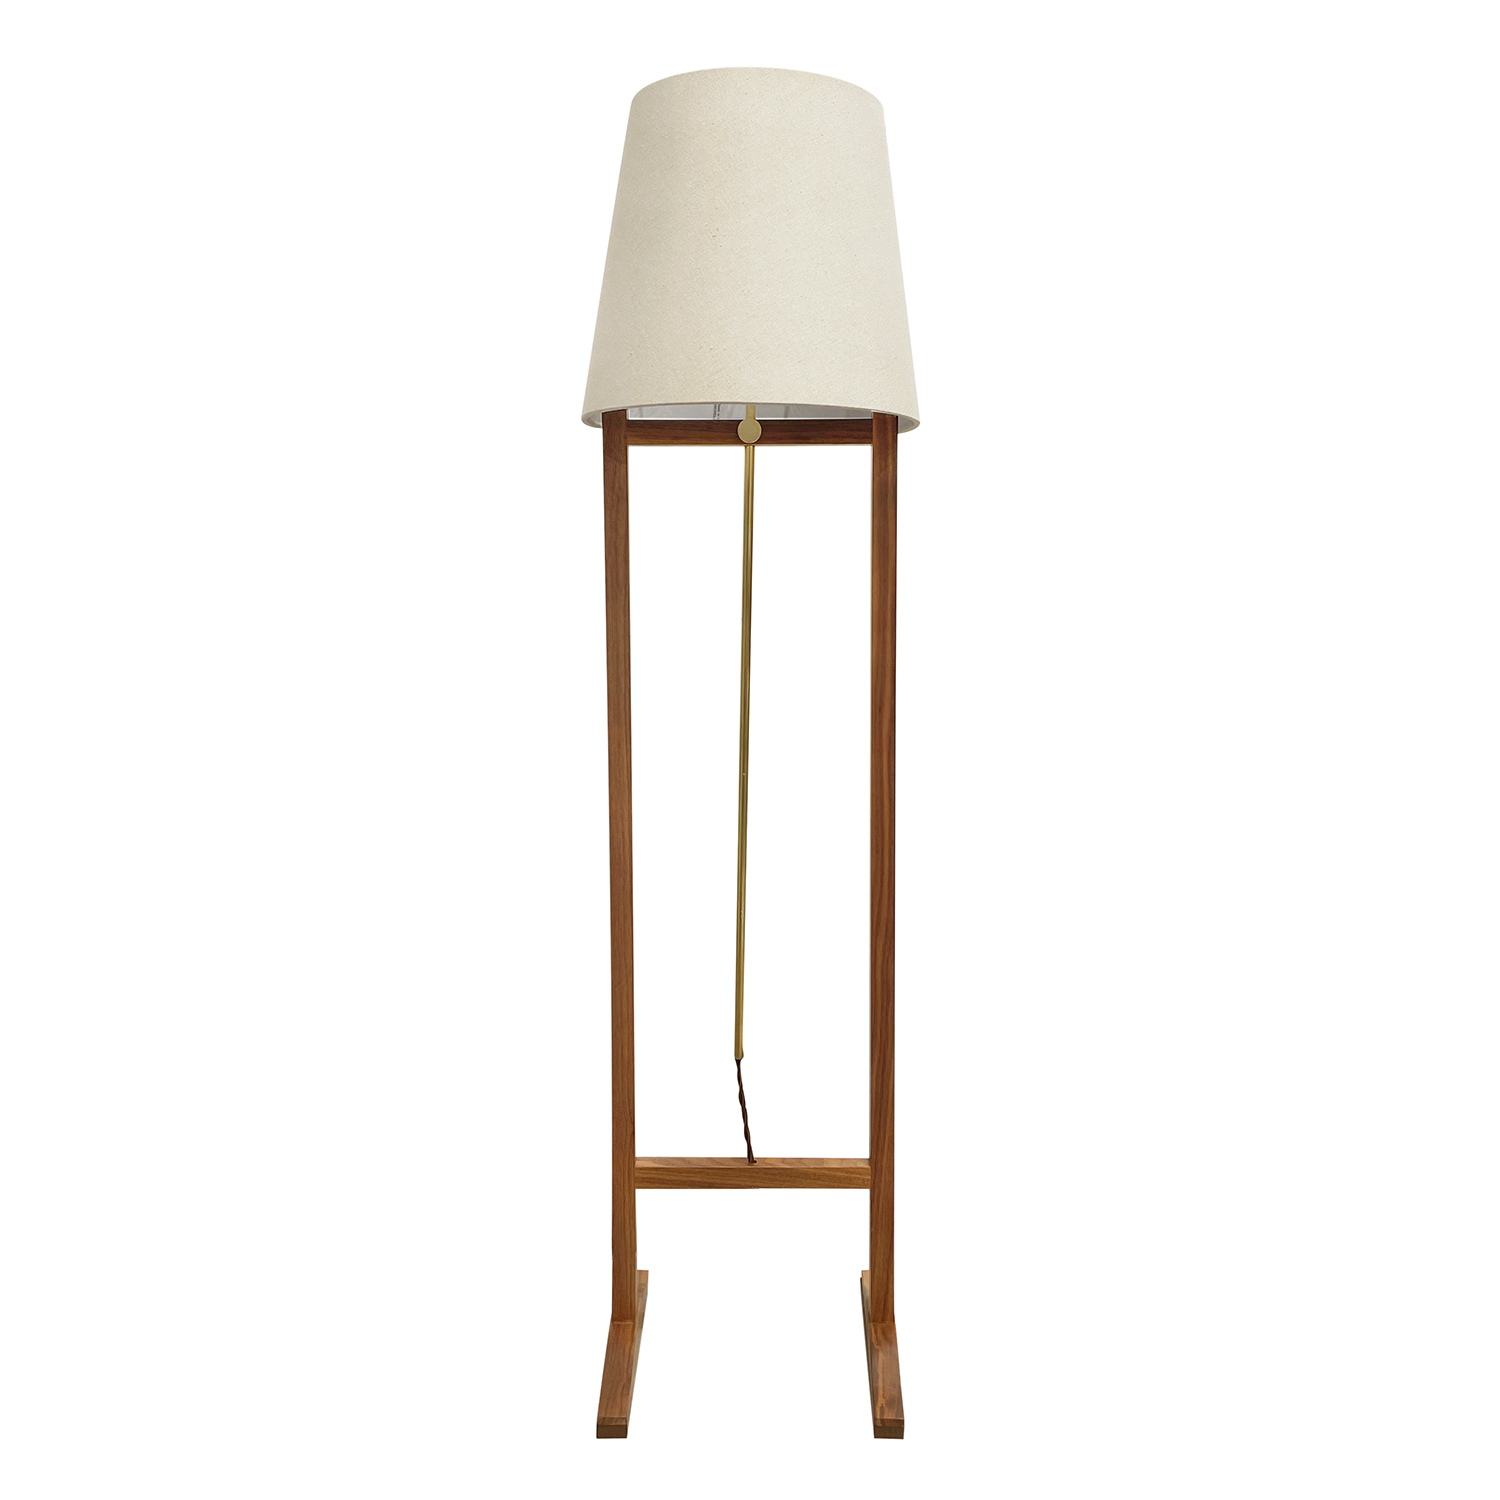 20th Century Swedish Svenskt Tenn Walnut Floor Lamp – Brass Light by Josef Frank